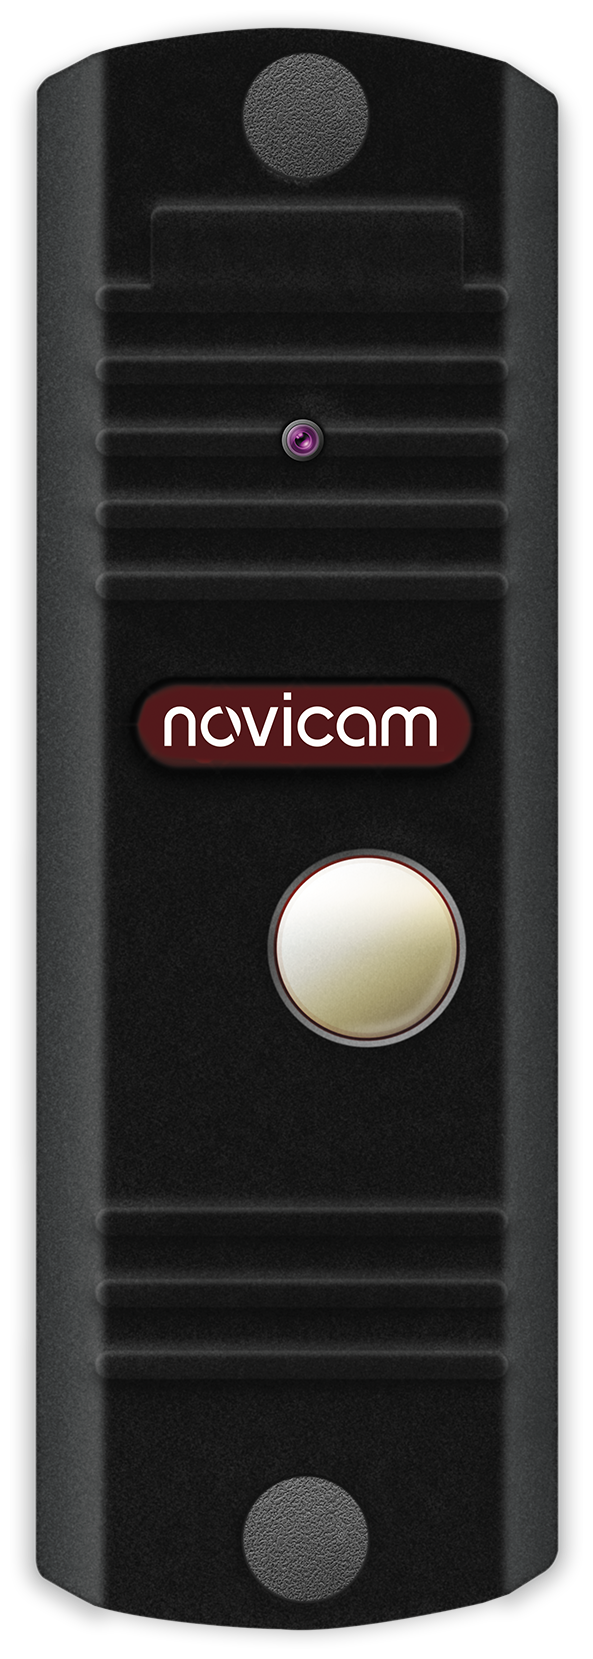 LEGEND SILVER Novicam v.4487 - вызывная панель; аналоговая камера: 700 ТВЛ угол обзора 95° ИК 3м; реле Н. Р./Н. З IP66; питание DC 12-15В